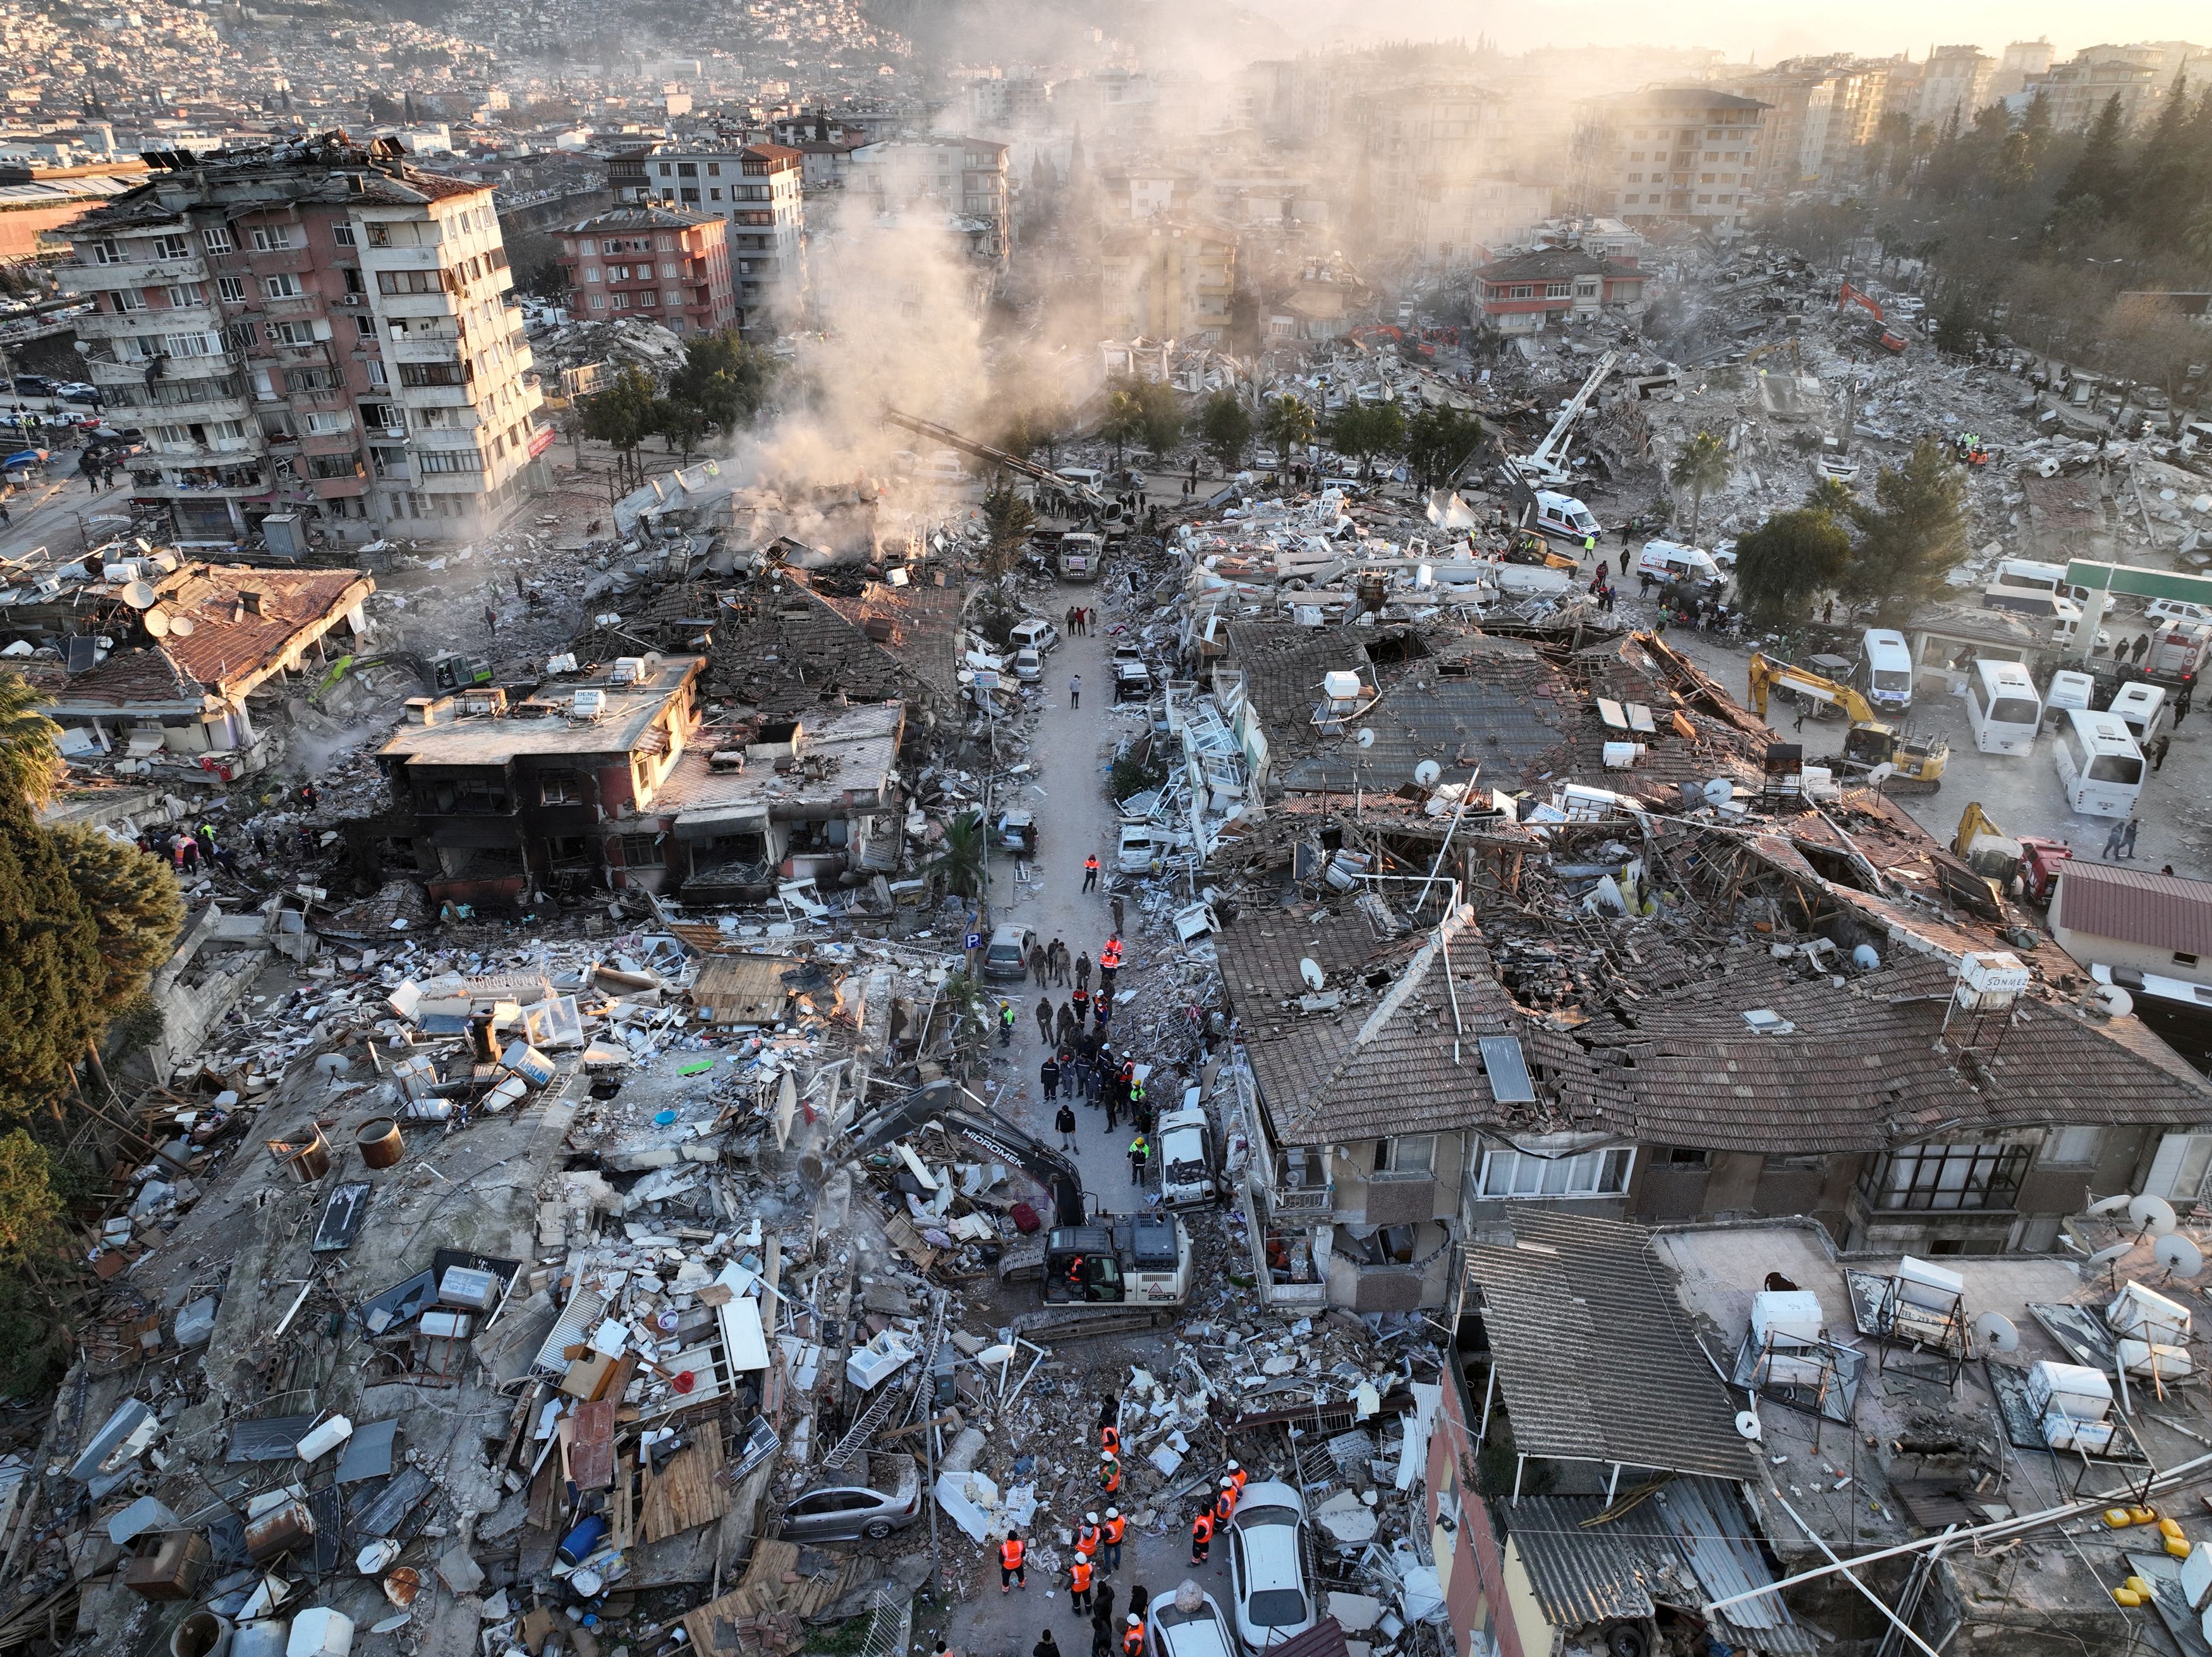 Γιατί άνοιξε συζήτηση για έναν πιθανό τρομακτικό σεισμό στην Ελλάδα; - Τι λένε οι σεισμολόγοι